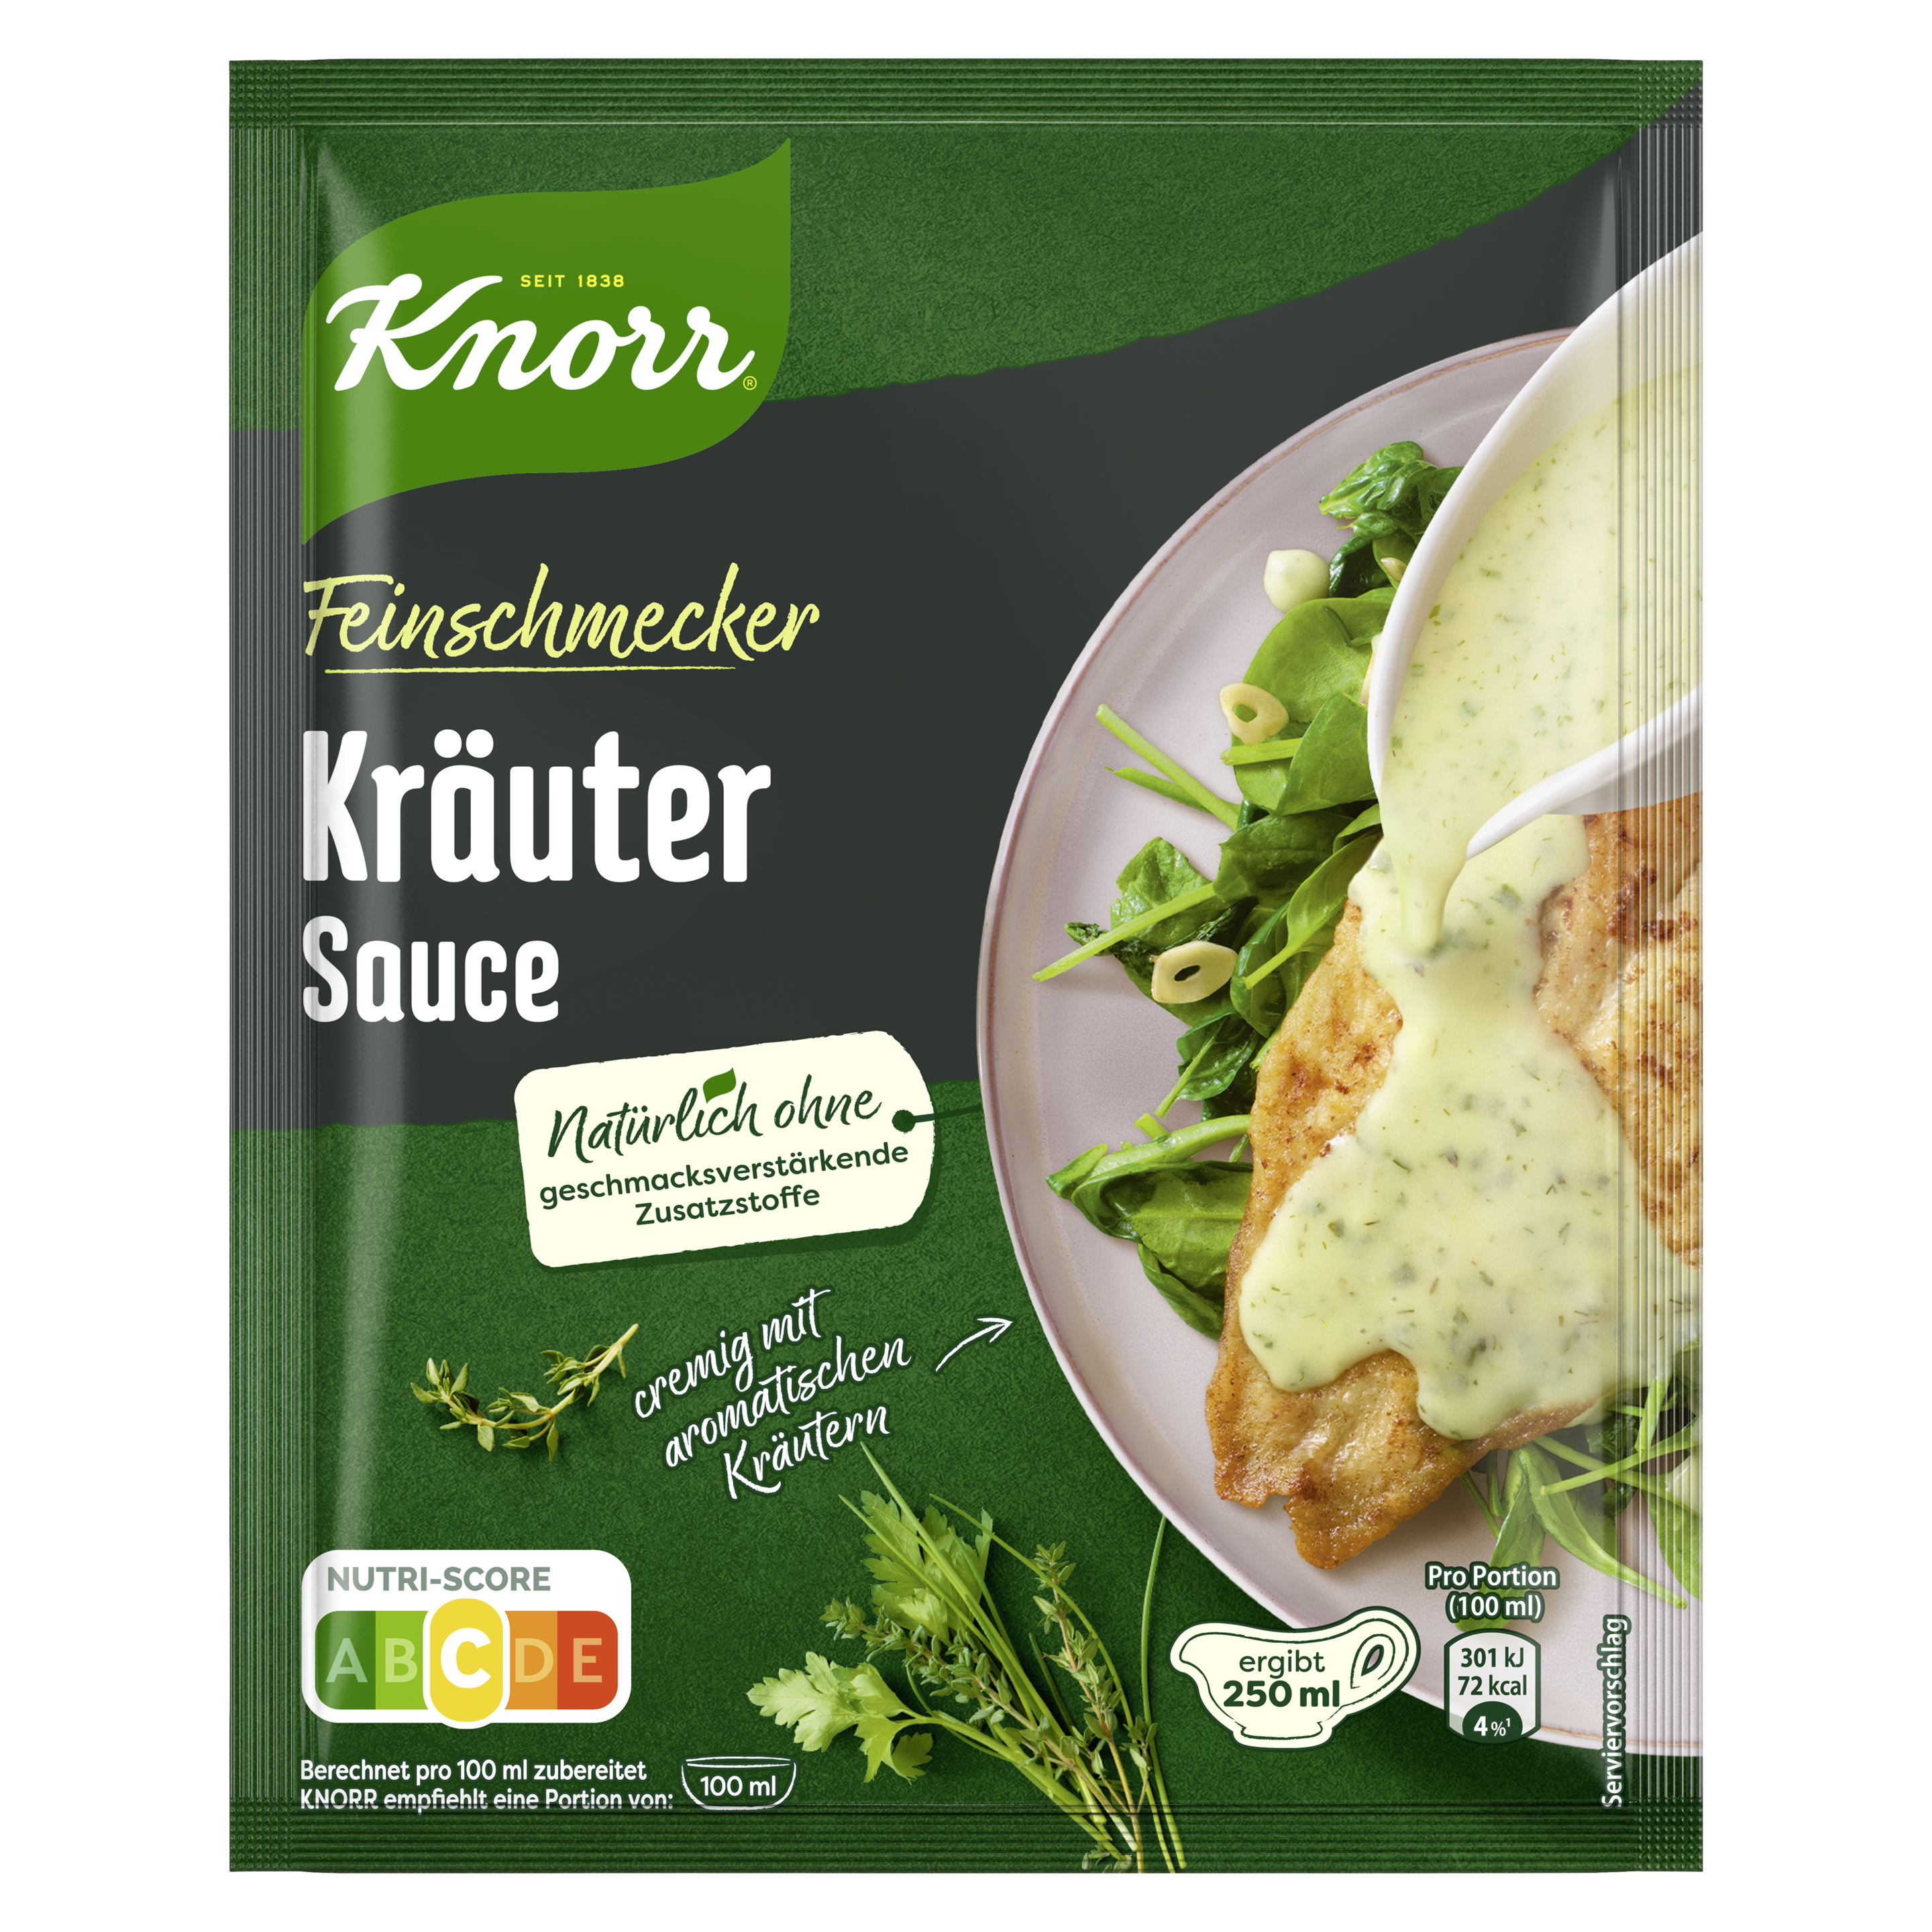 Knorr Feinschmecker Kräuter Sauce ergibt 250 ml